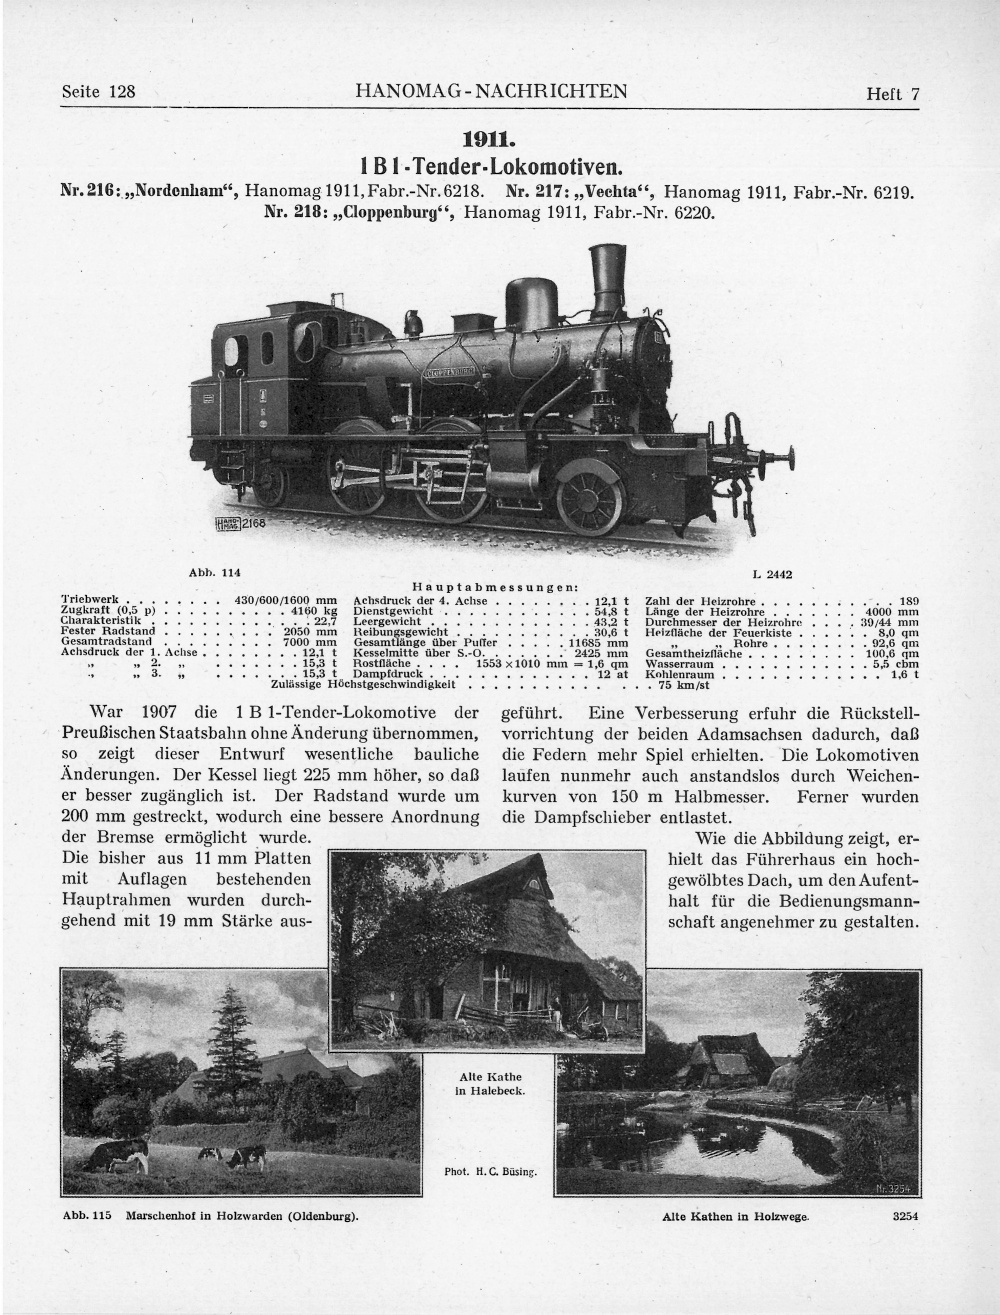 Der Bauform der T 5.1 ab 1911 ist in der Übersocht über oldenburgische Lokomotiven in den Hanomag-Nachrichten von 1916 fast eine ganze Seite gewidmet